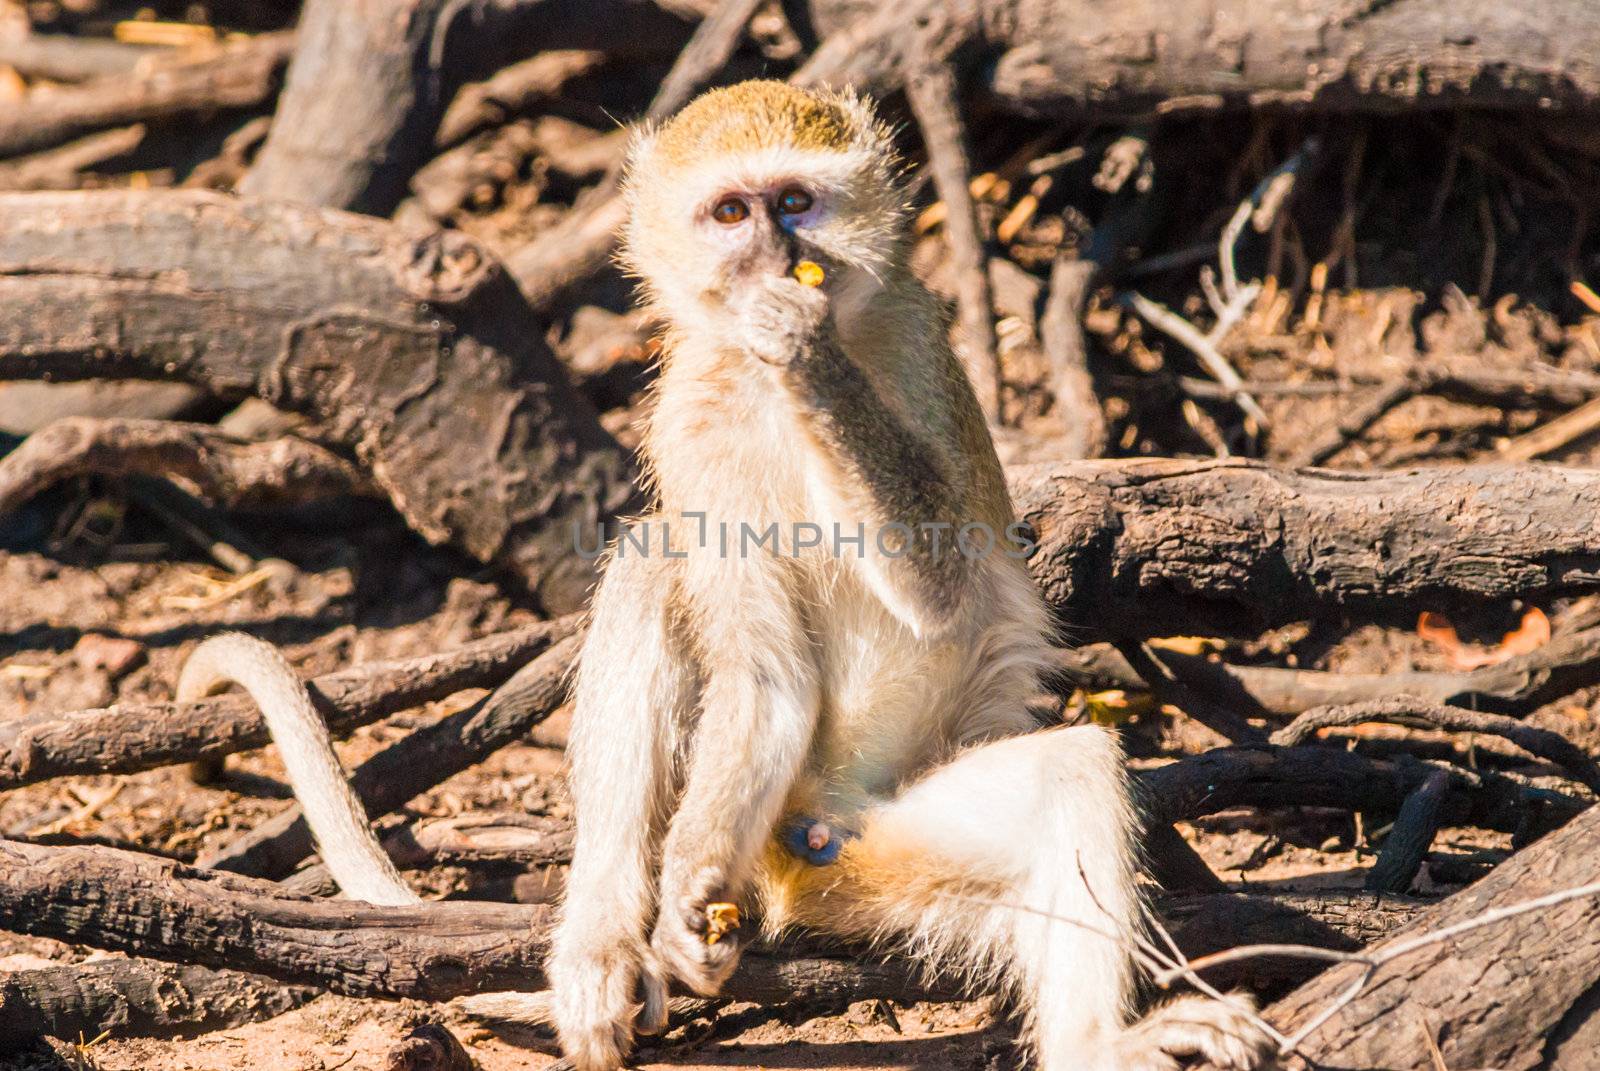 Vervet monkeys by edan